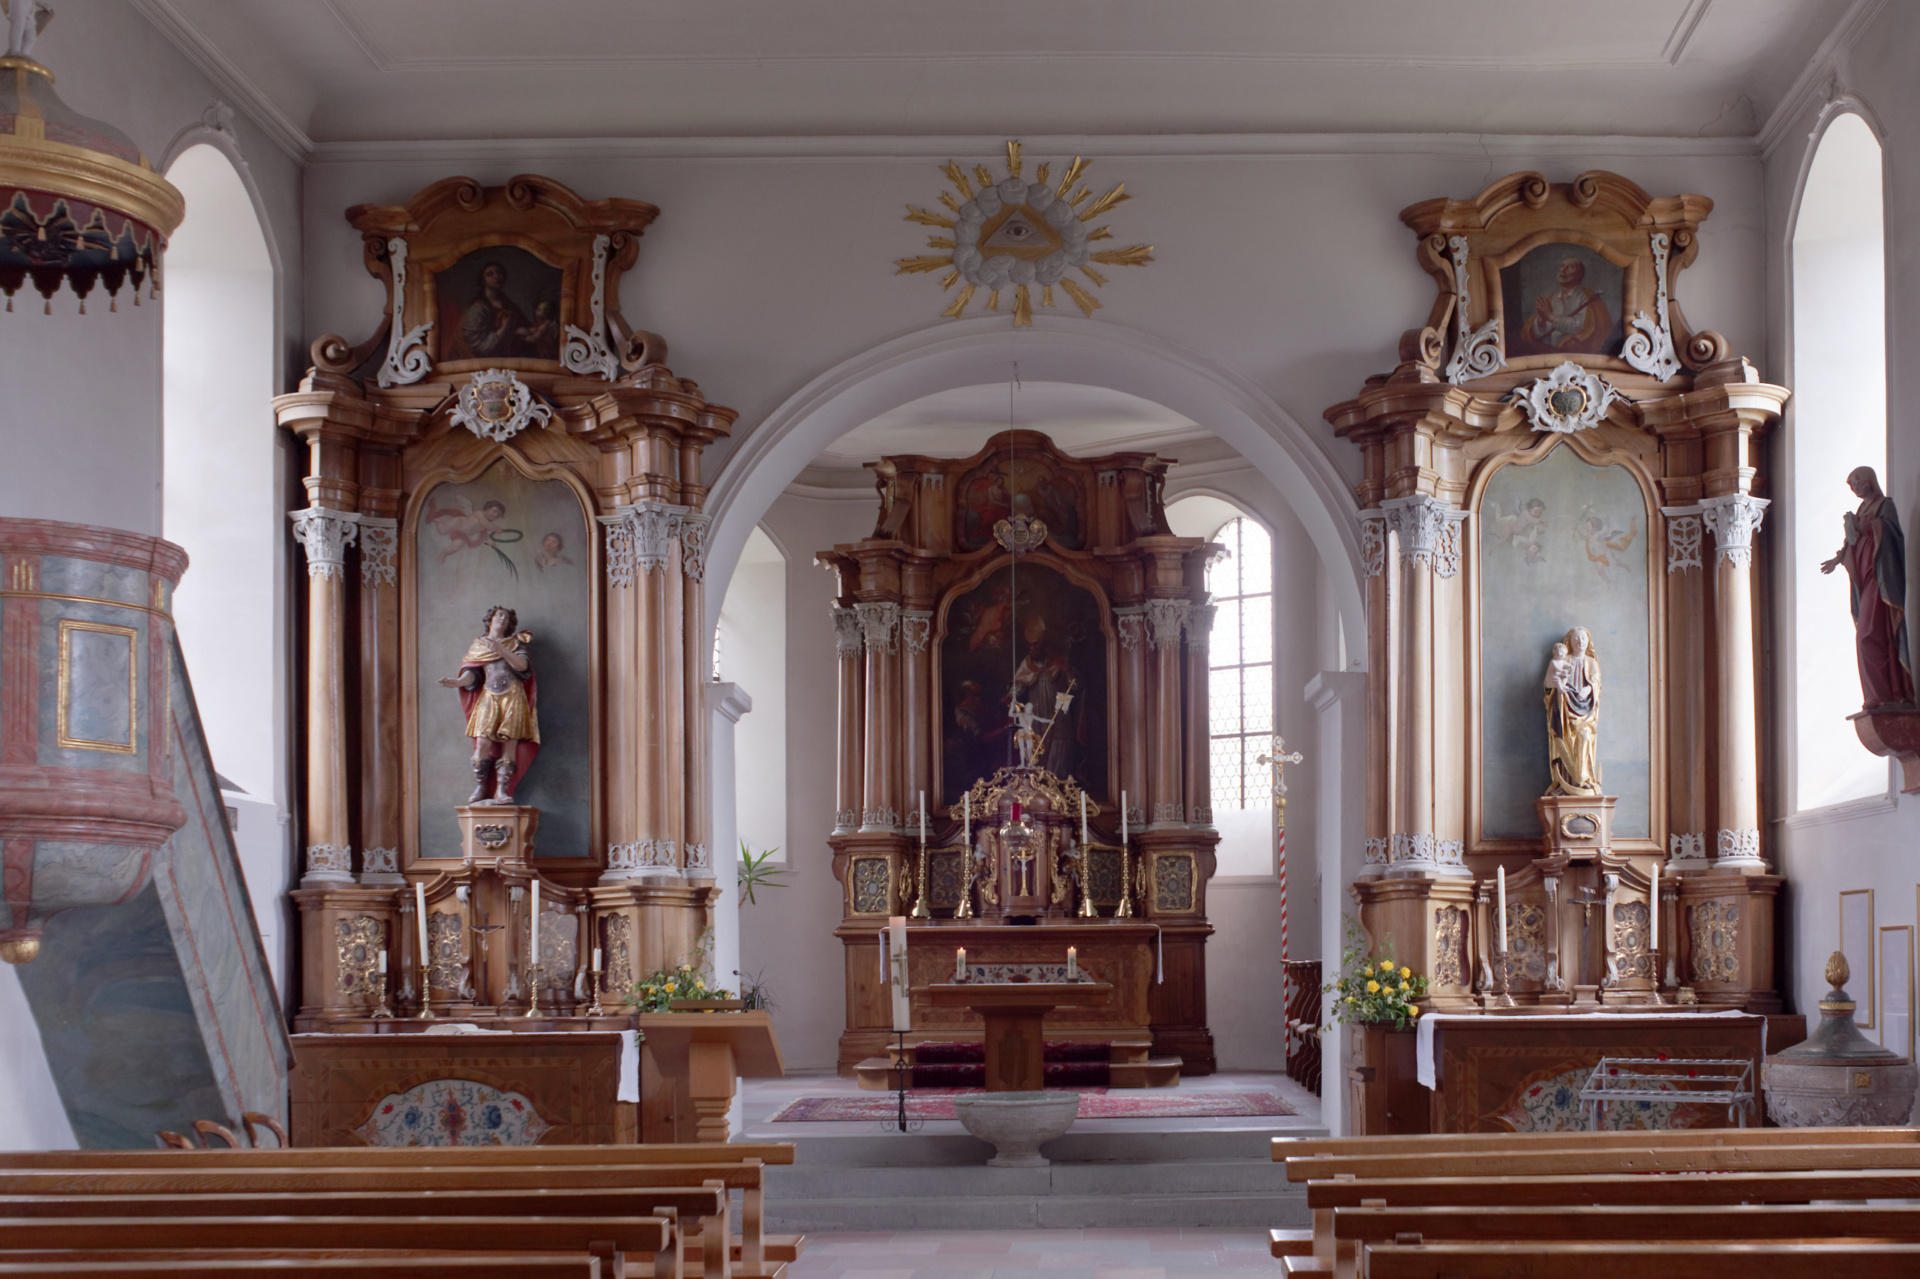 Dorfkirche St. Martin in Magden mit Blick auf den Chor und den Seitenaltären